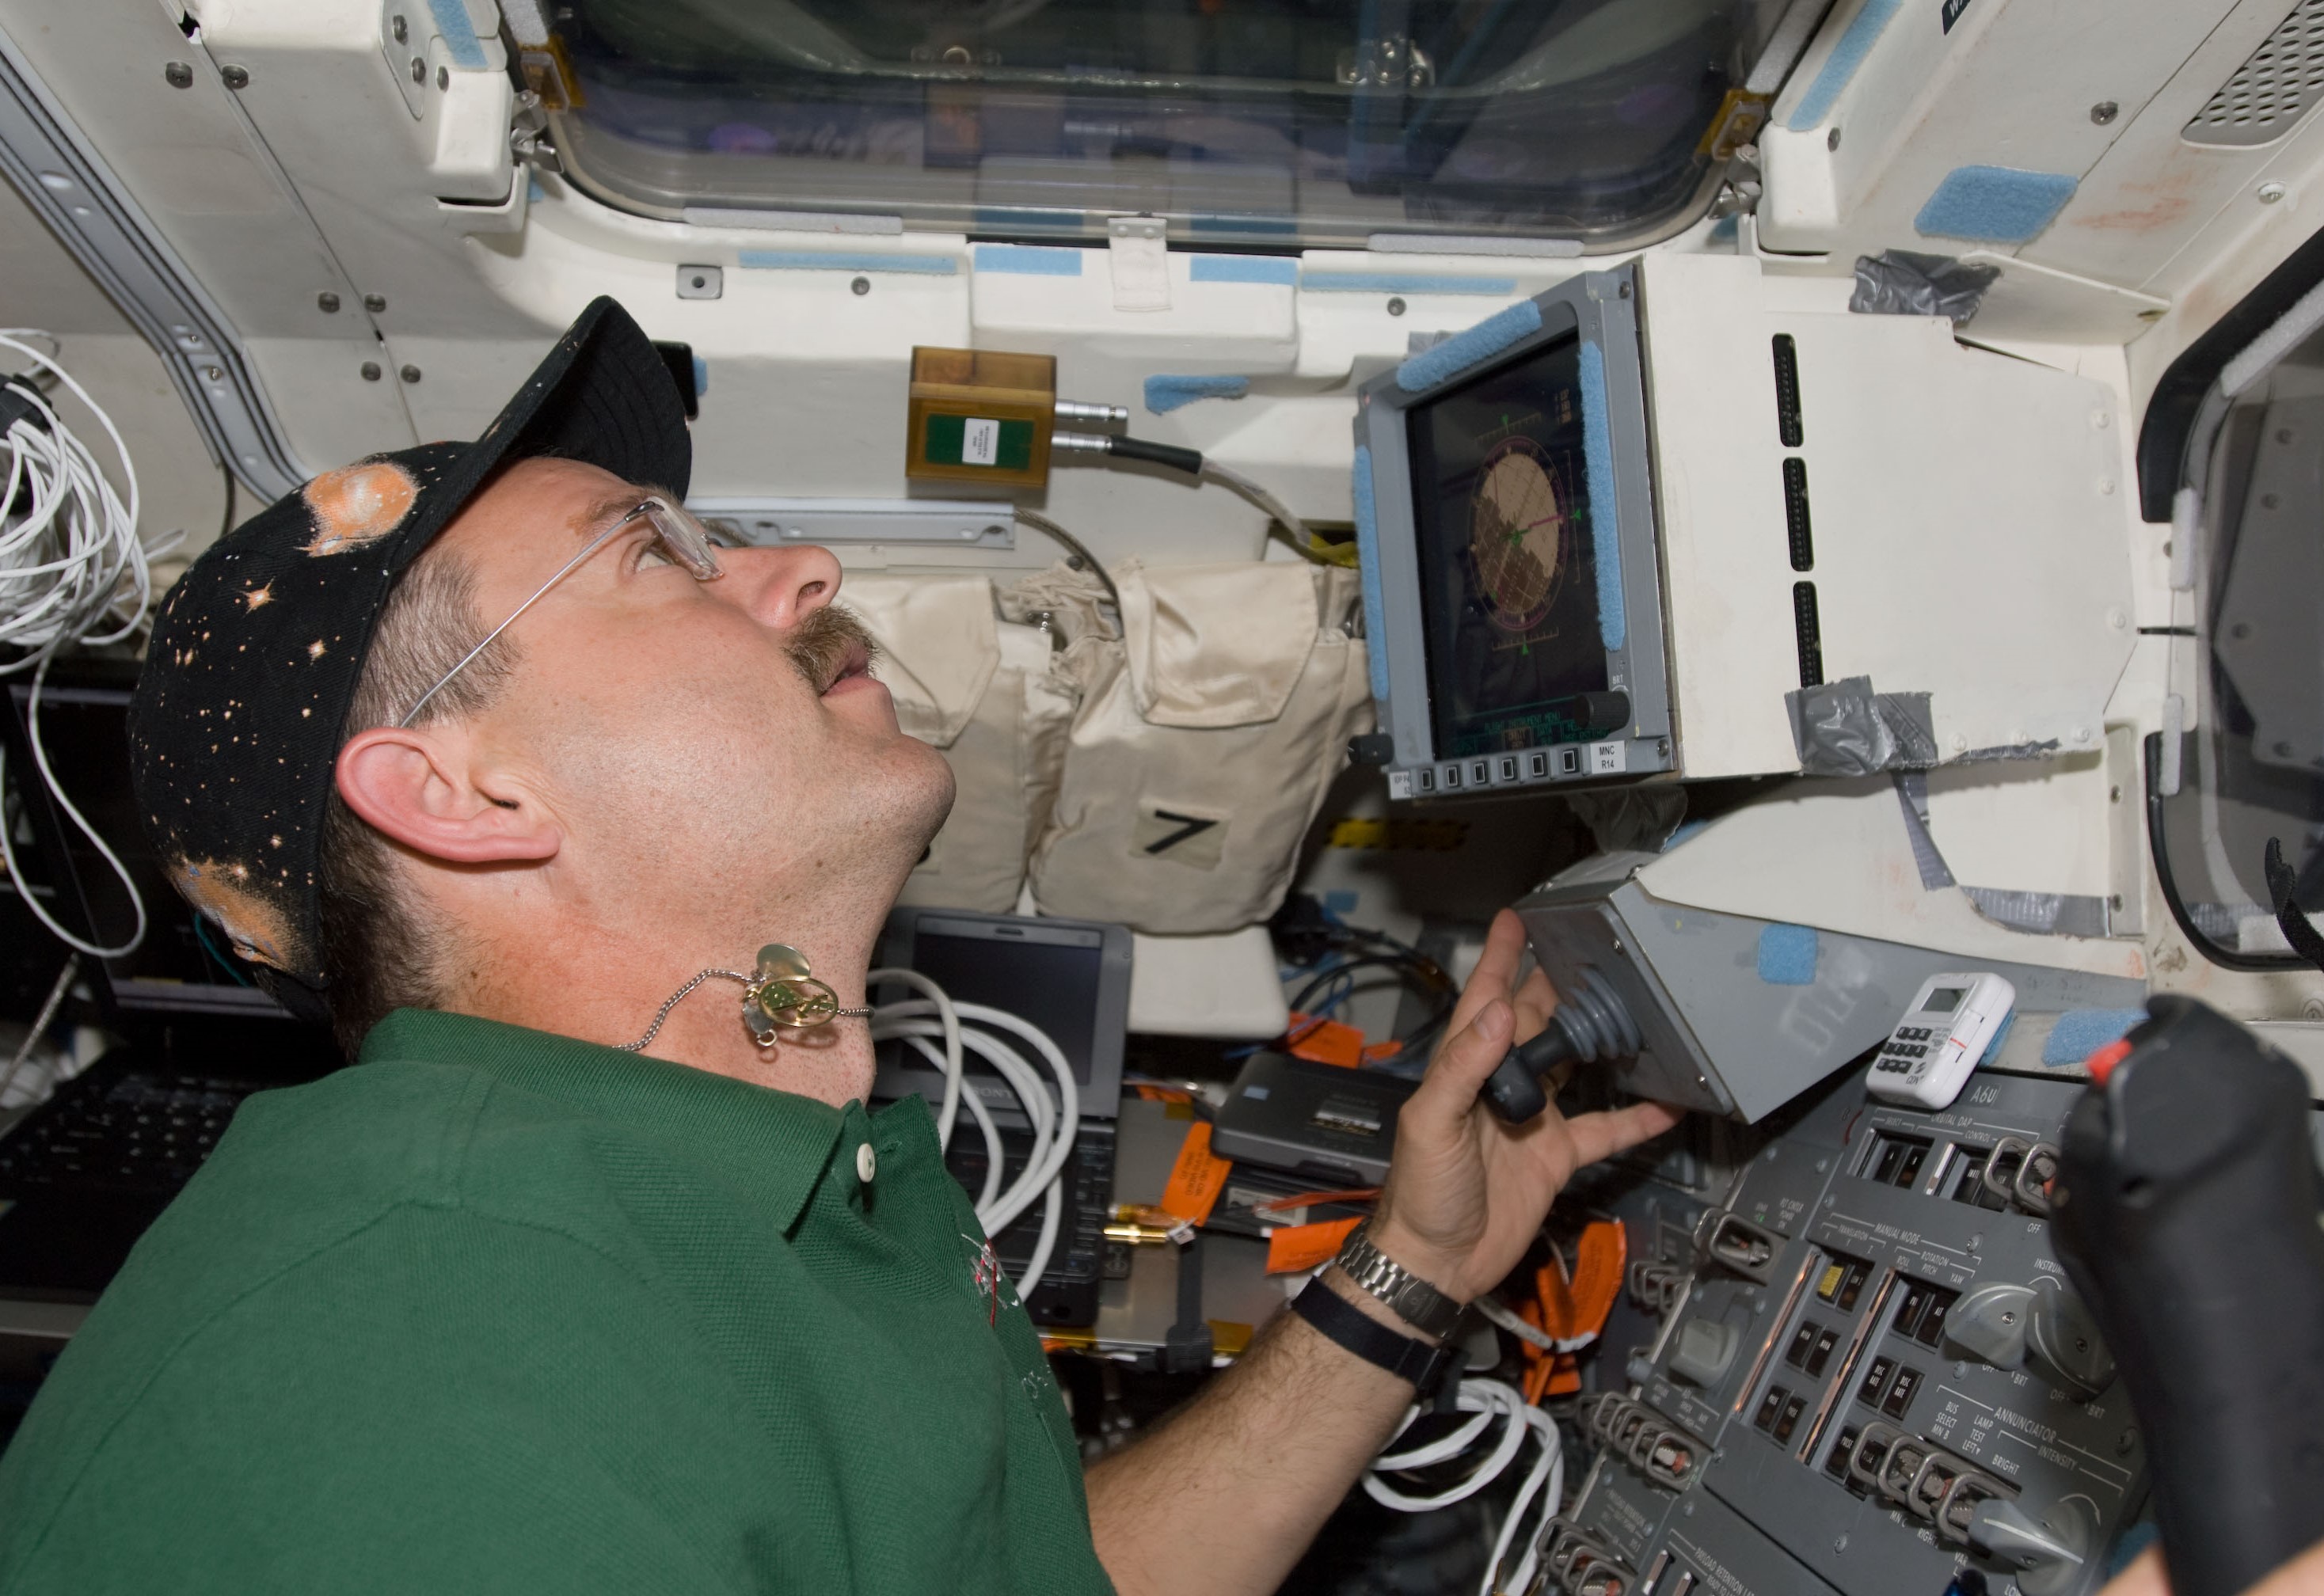 El comandante del STS-125 Scott D. Altman maniobra el Atlantis cerca del Hubble